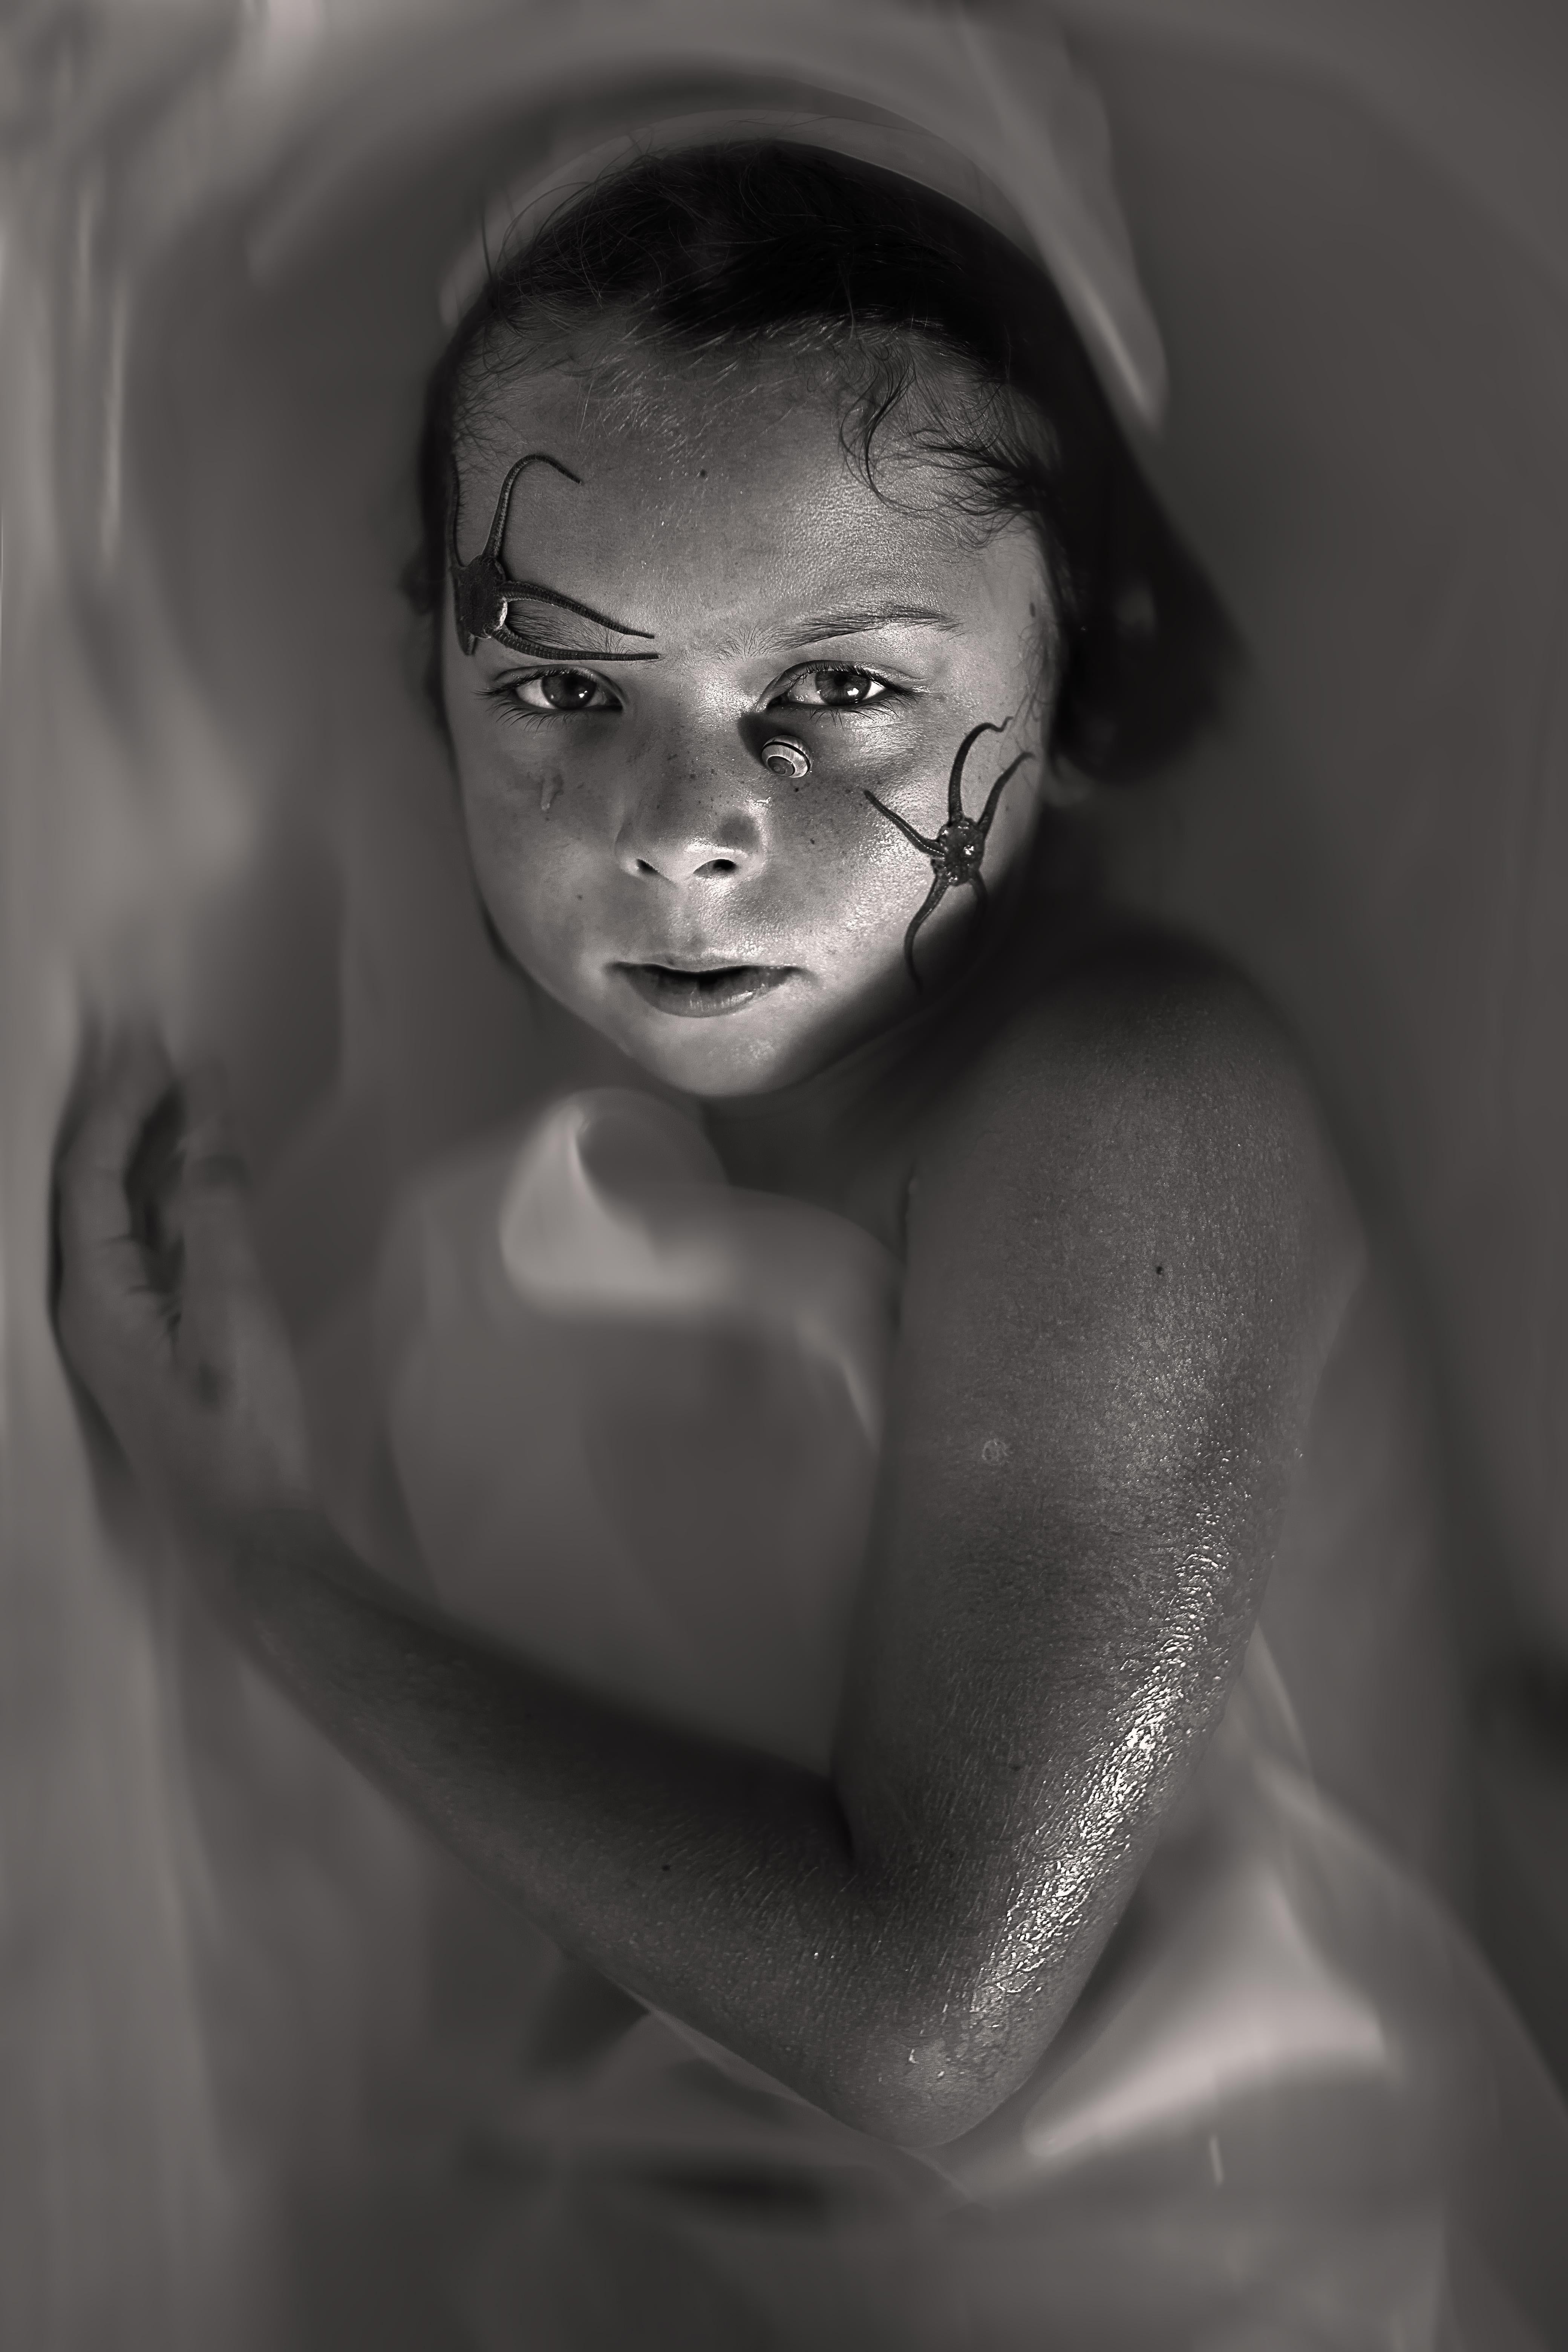 Girl and Starfish Fine Art Photography Limitierte Auflage von 1 Druck (Schwarz), Black and White Photograph, von Laurentina Miksys